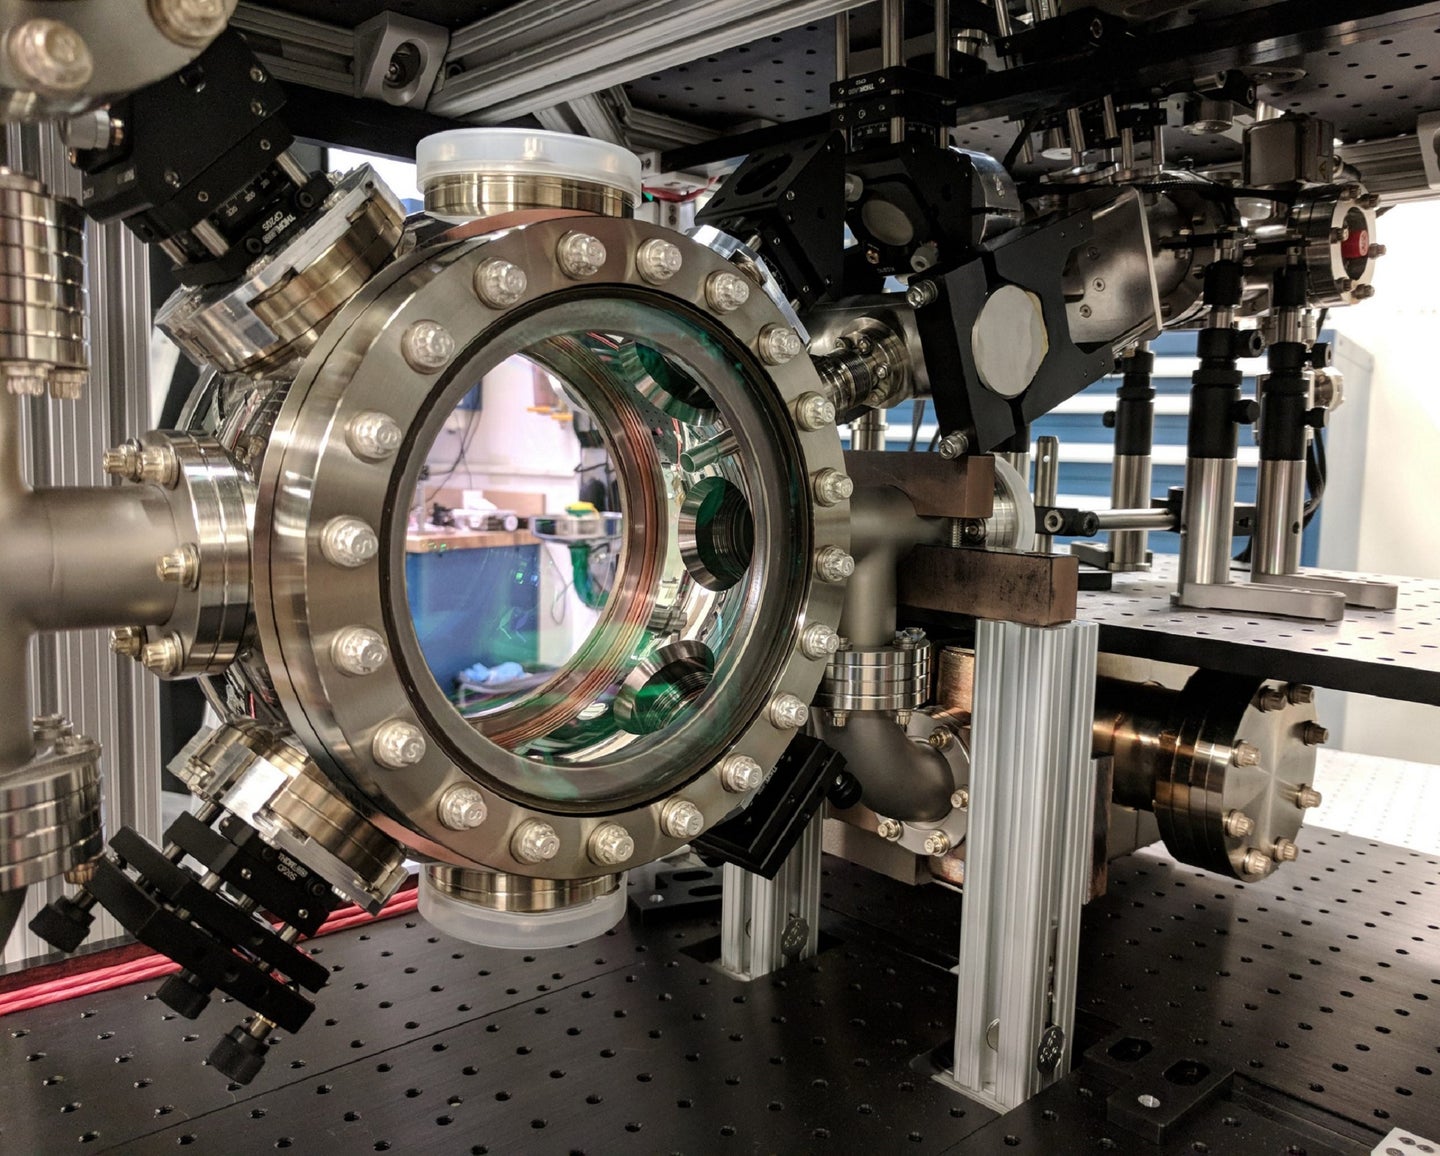 MAGIS-100 vacuum for a Fermilab quantum physics experiment